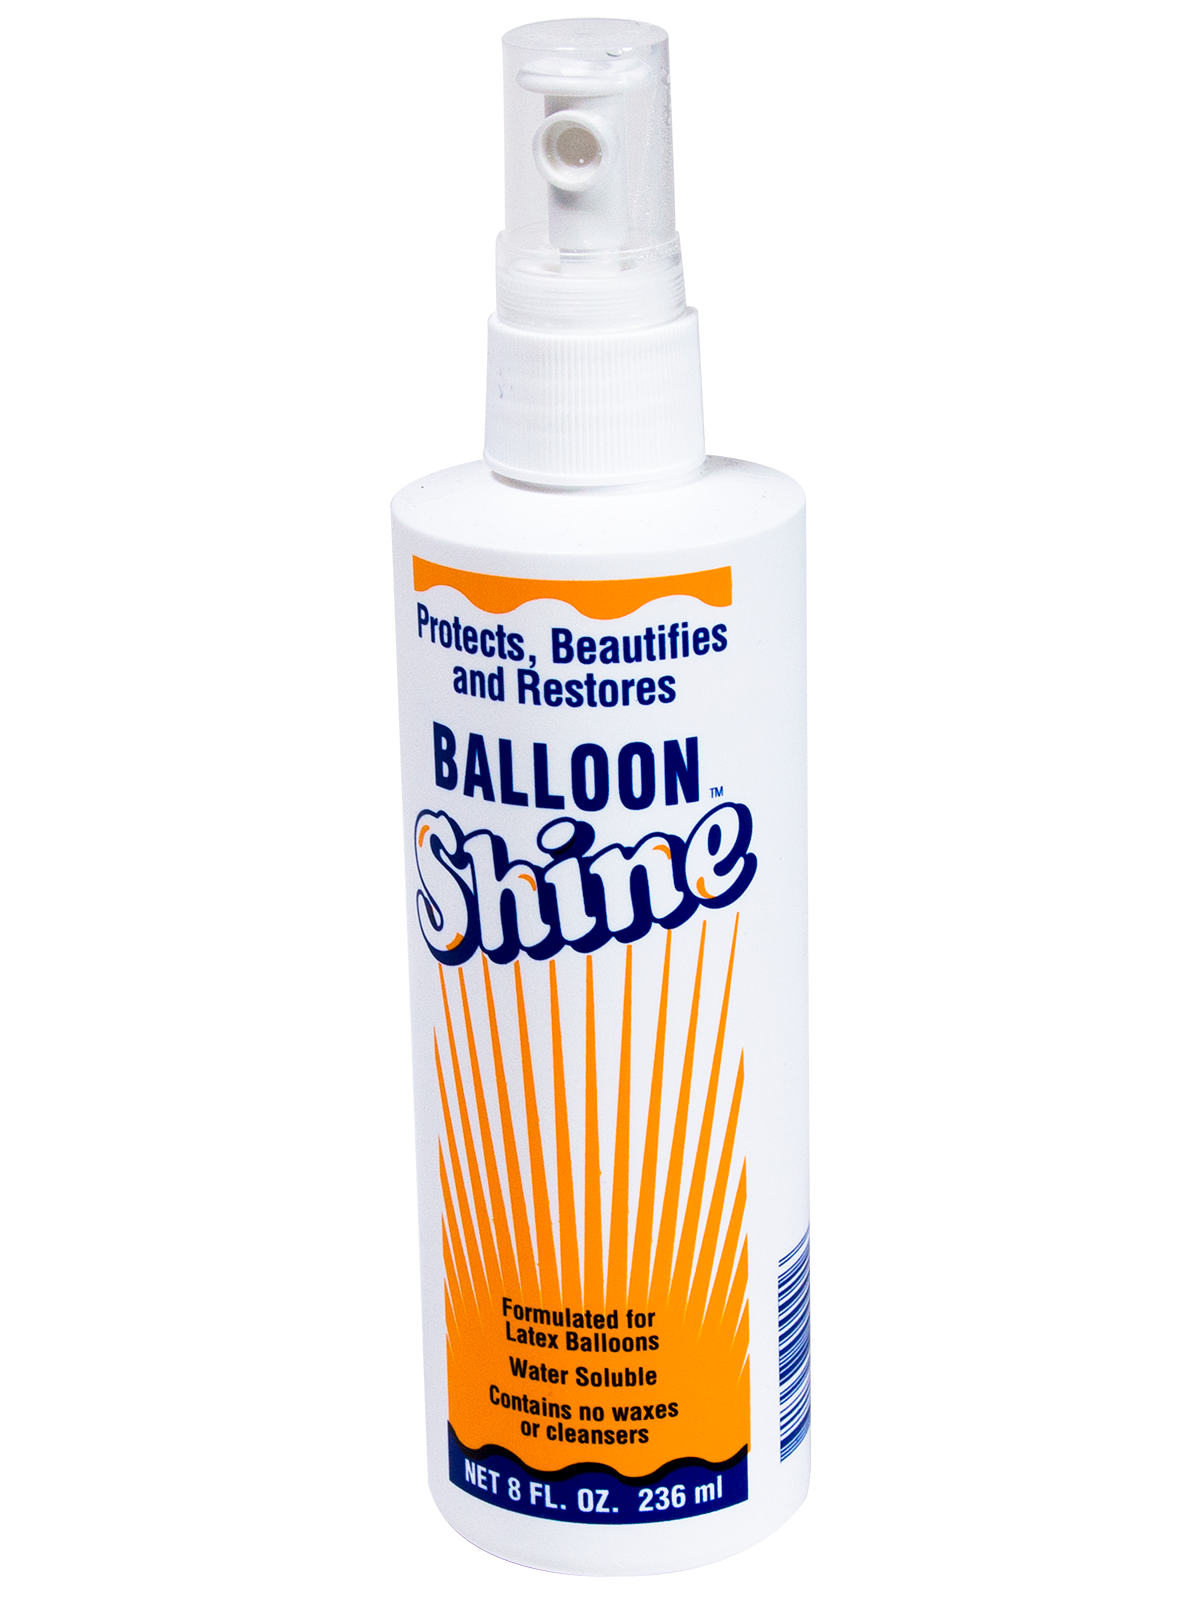 Mega Shine Balloon Shine Spray for all Balloon Events, High Quality Shine |  BalloonStop